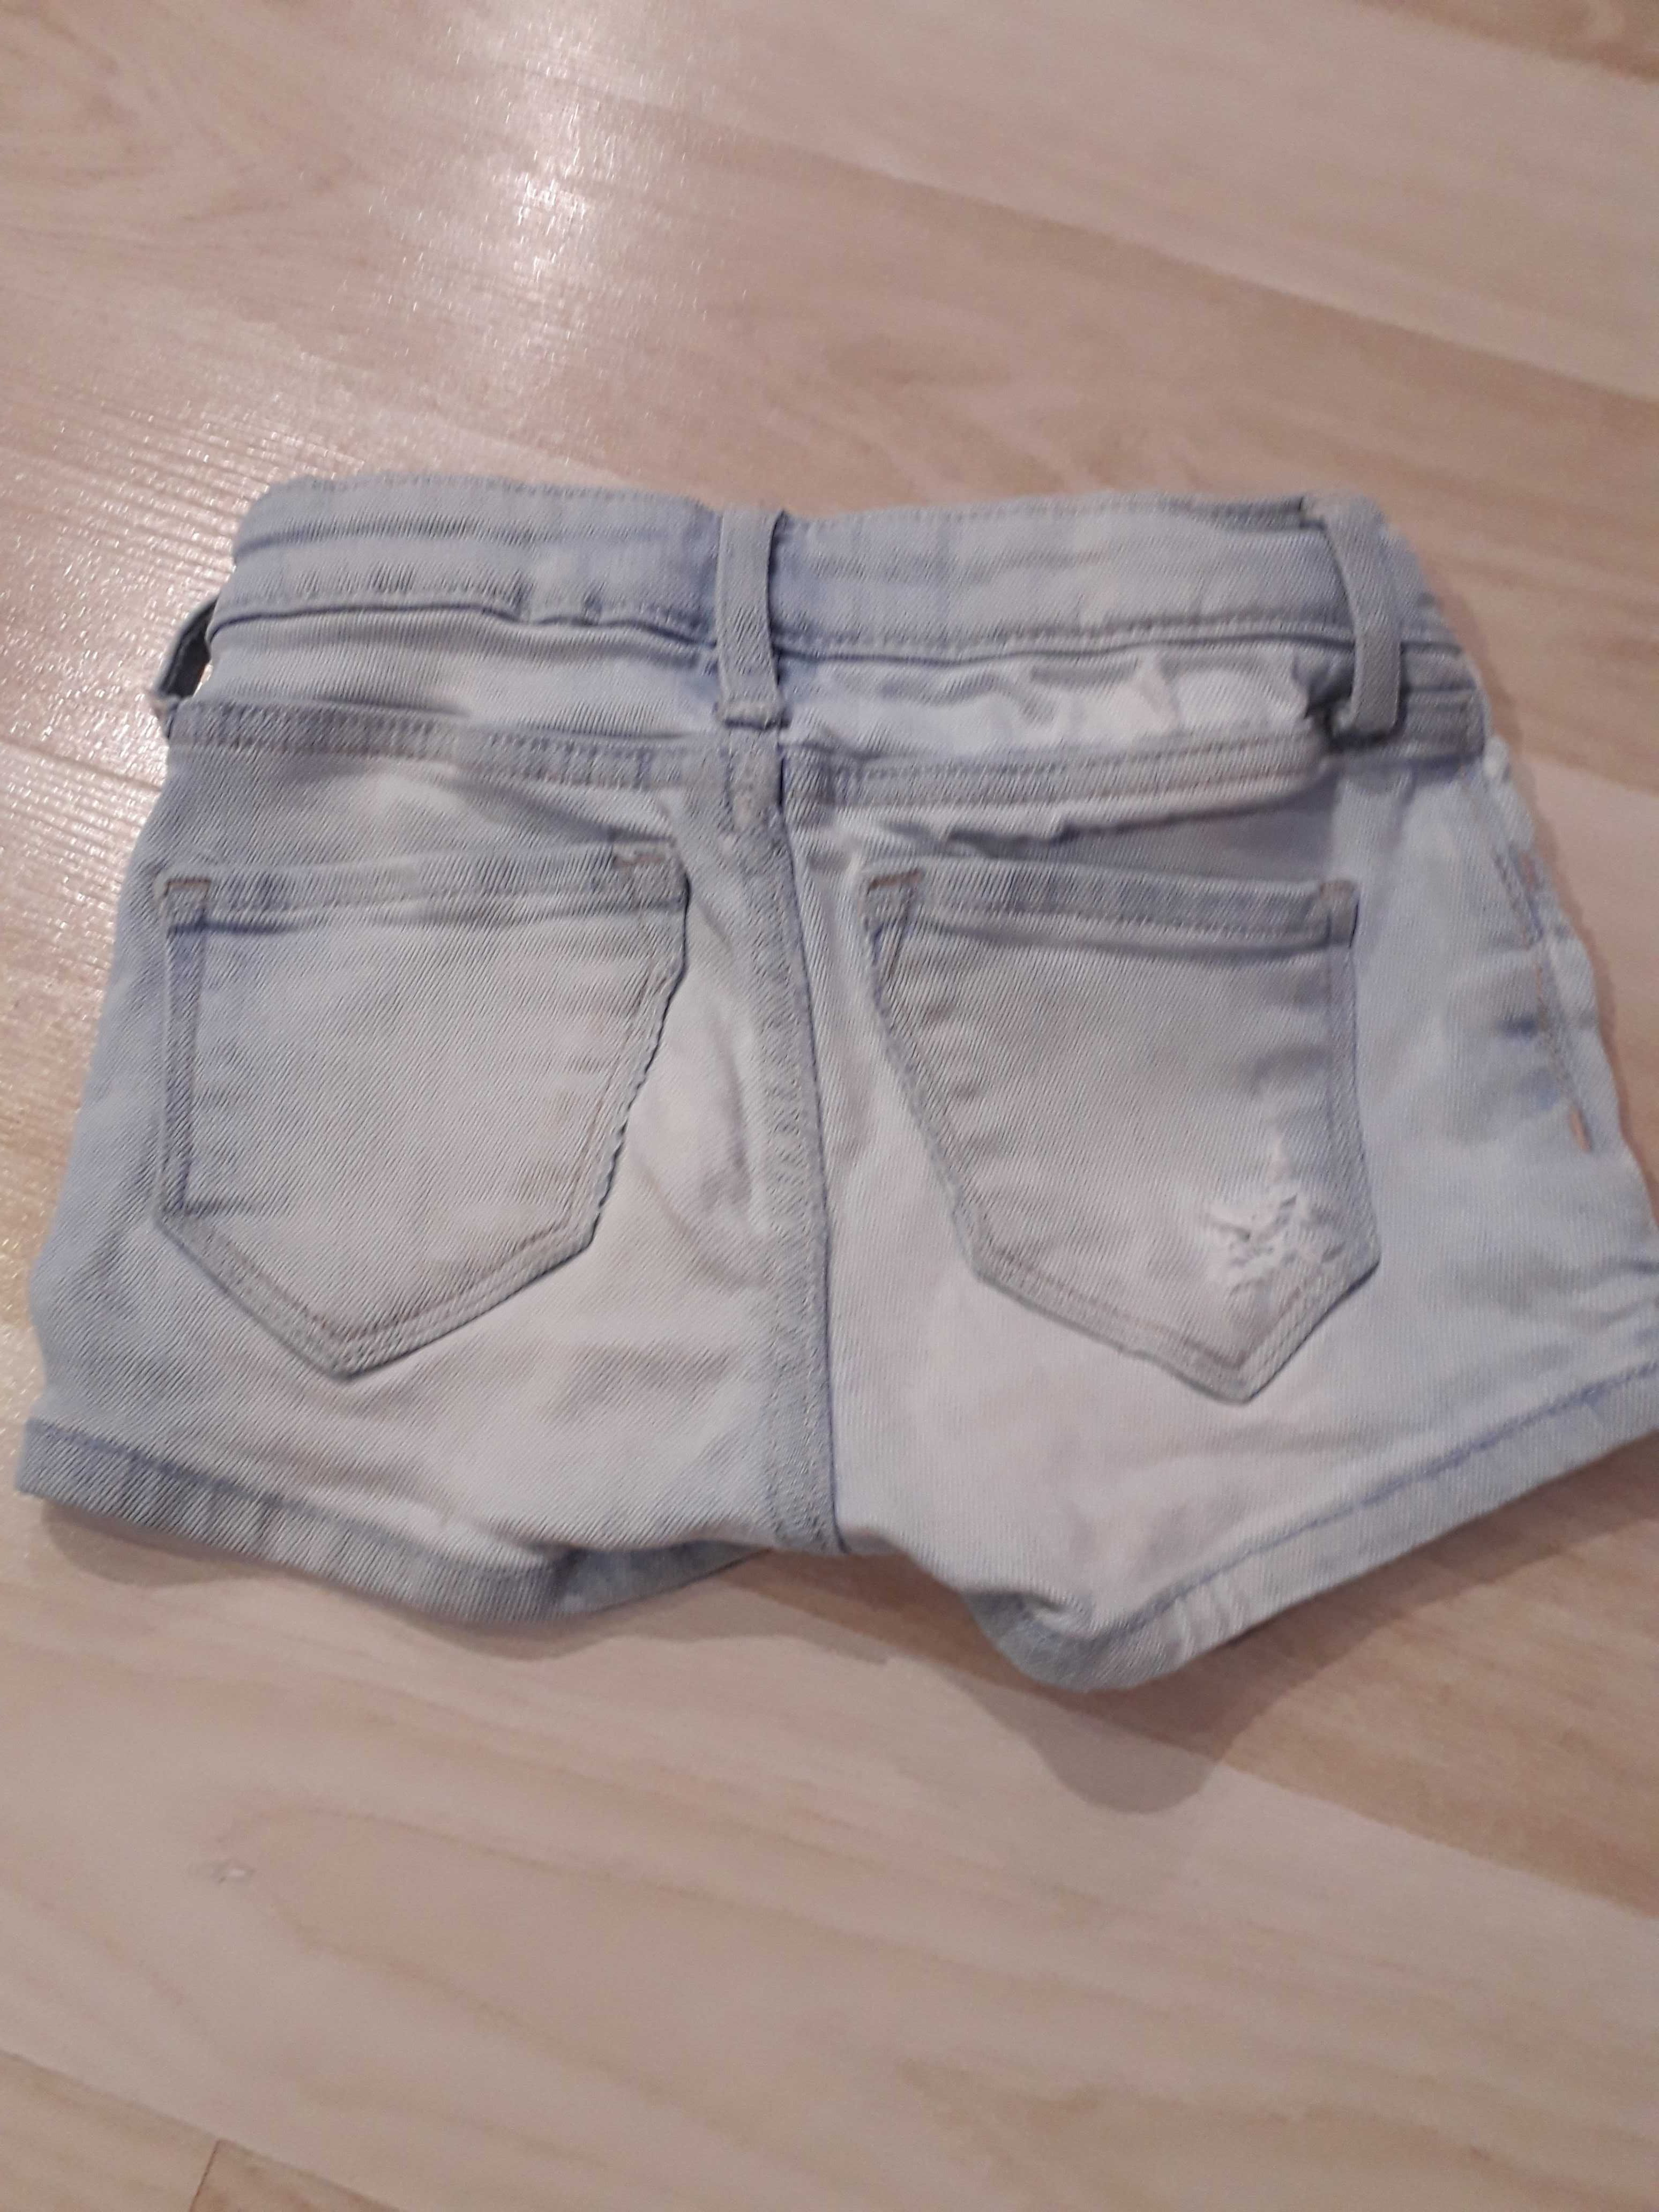 Spodenki 98 h&m krótkie jeansowe dla dziewczynki